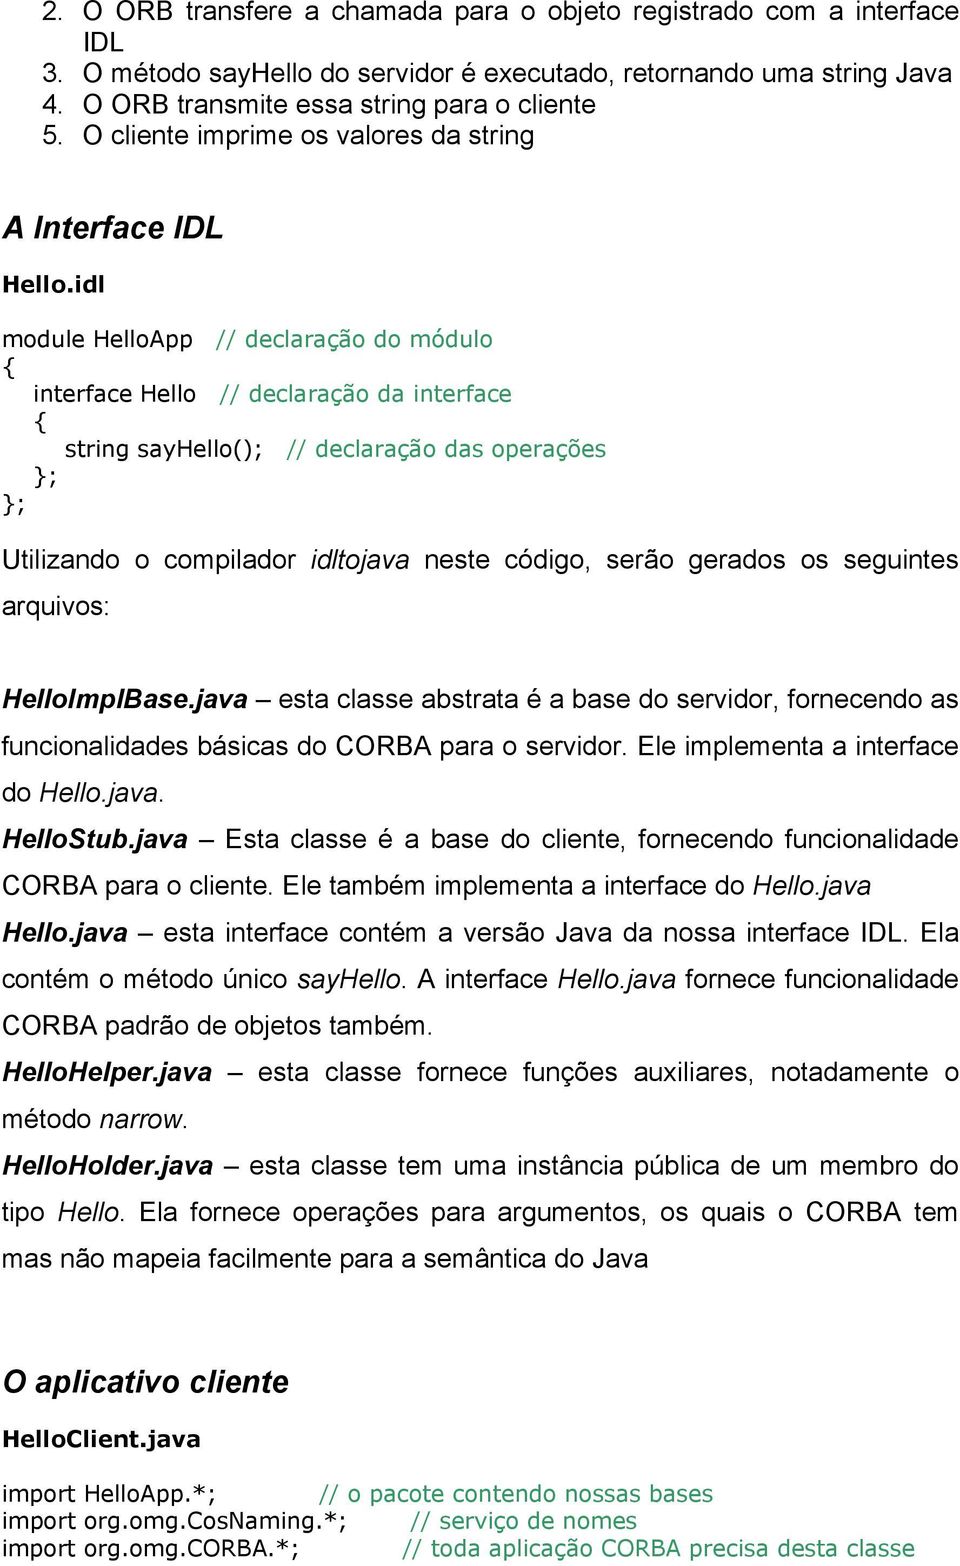 idl module HelloApp // declaração do módulo interface Hello // declaração da interface string sayhello(); // declaração das operações ; ; Utilizando o compilador idltojava neste código, serão gerados